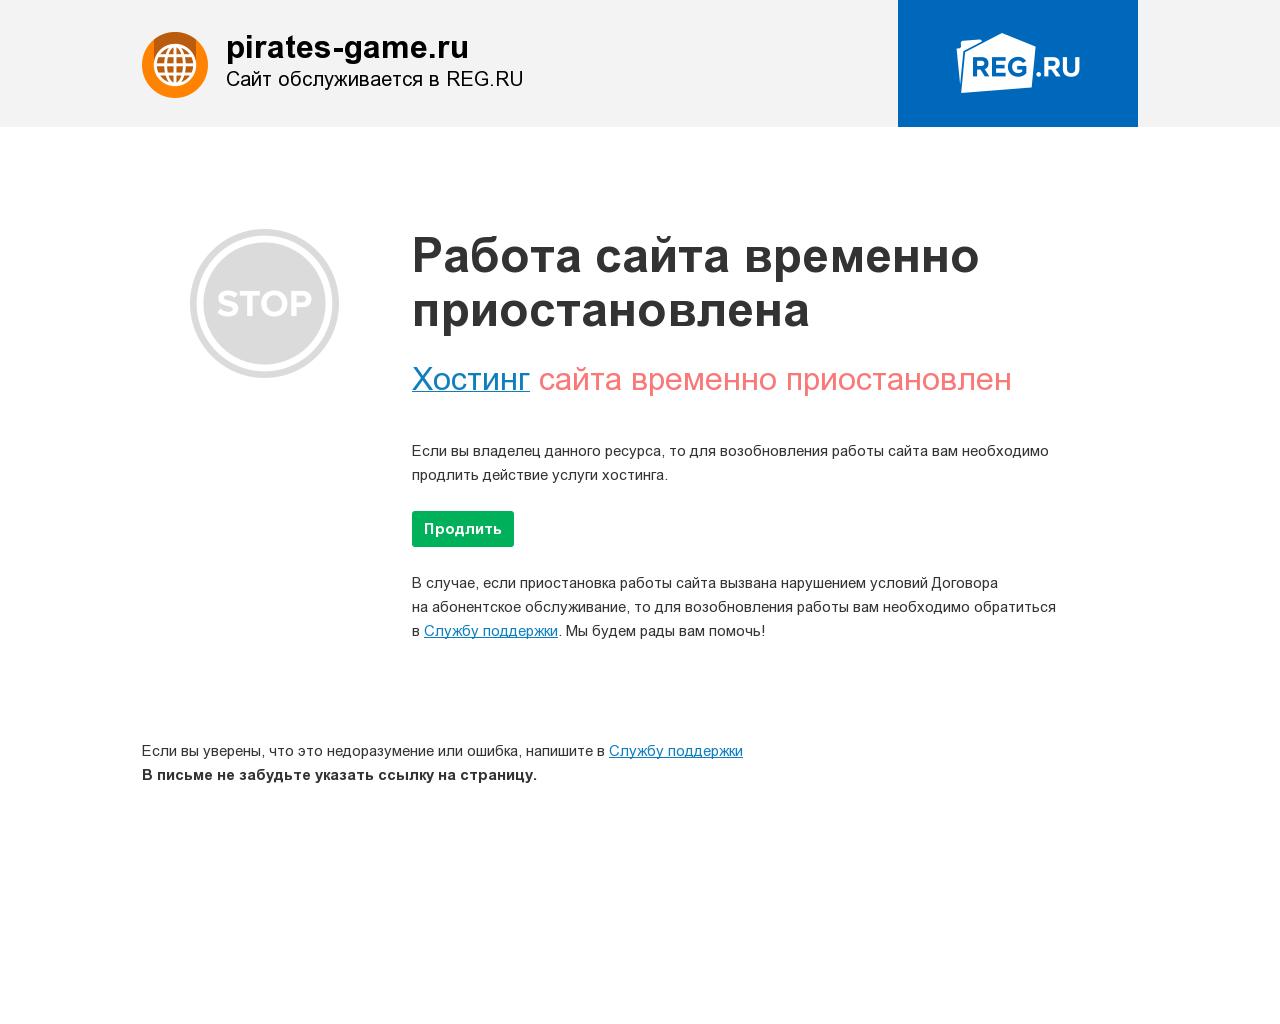 Изображение сайта pirates-game.ru в разрешении 1280x1024